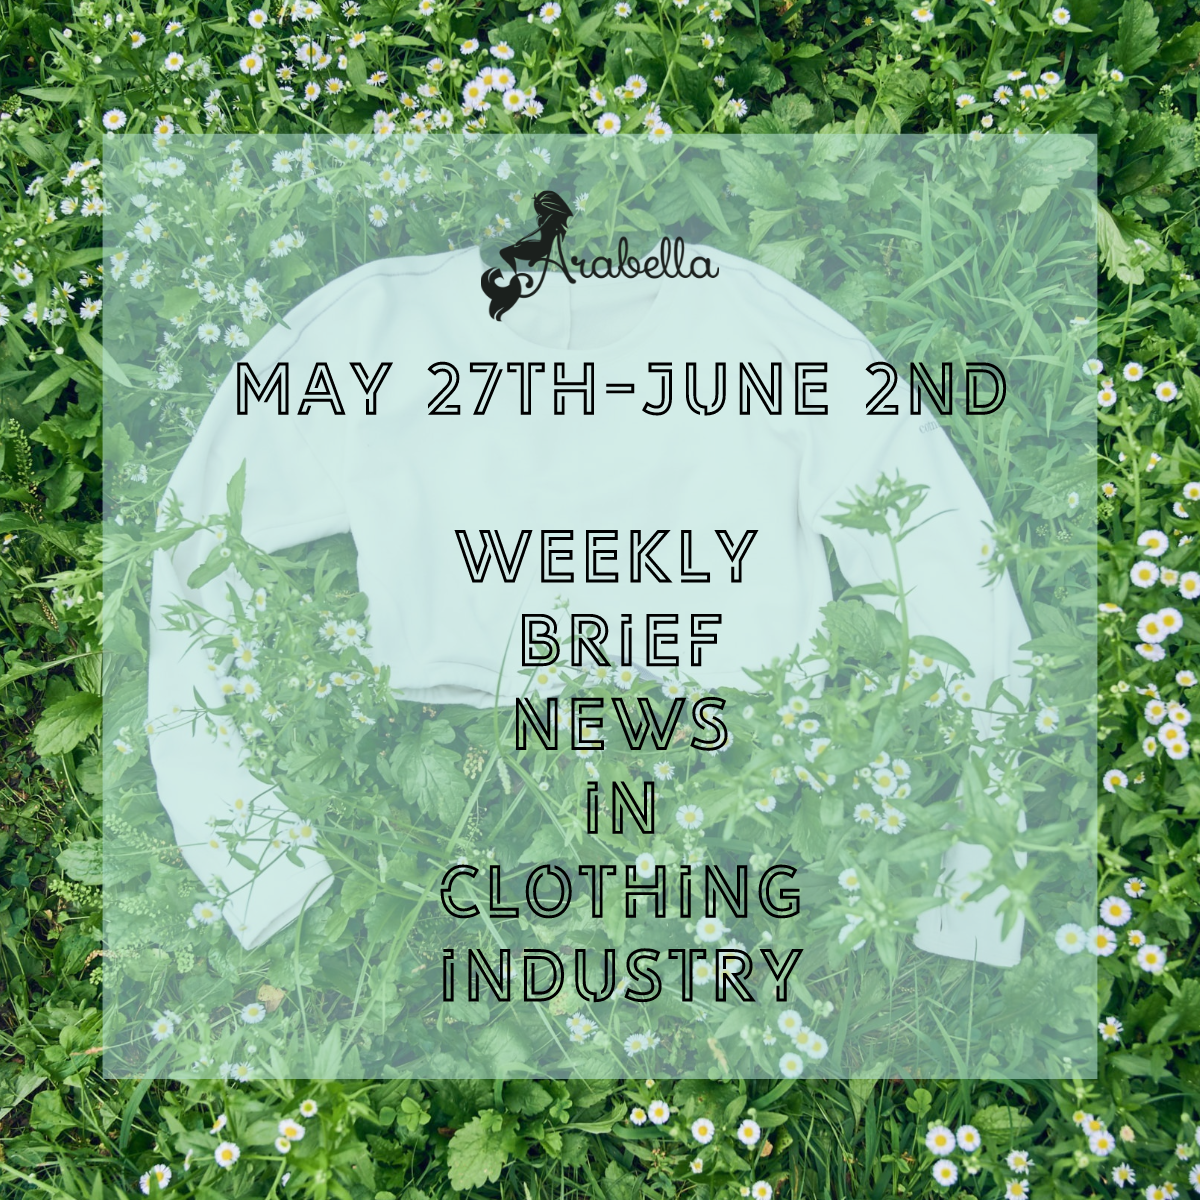 जैव-आधारित इलास्टेन के लिए अद्भुत समाचार!27 मई से 2 जून के दौरान वस्त्र उद्योग में अरेबेला का साप्ताहिक संक्षिप्त समाचार